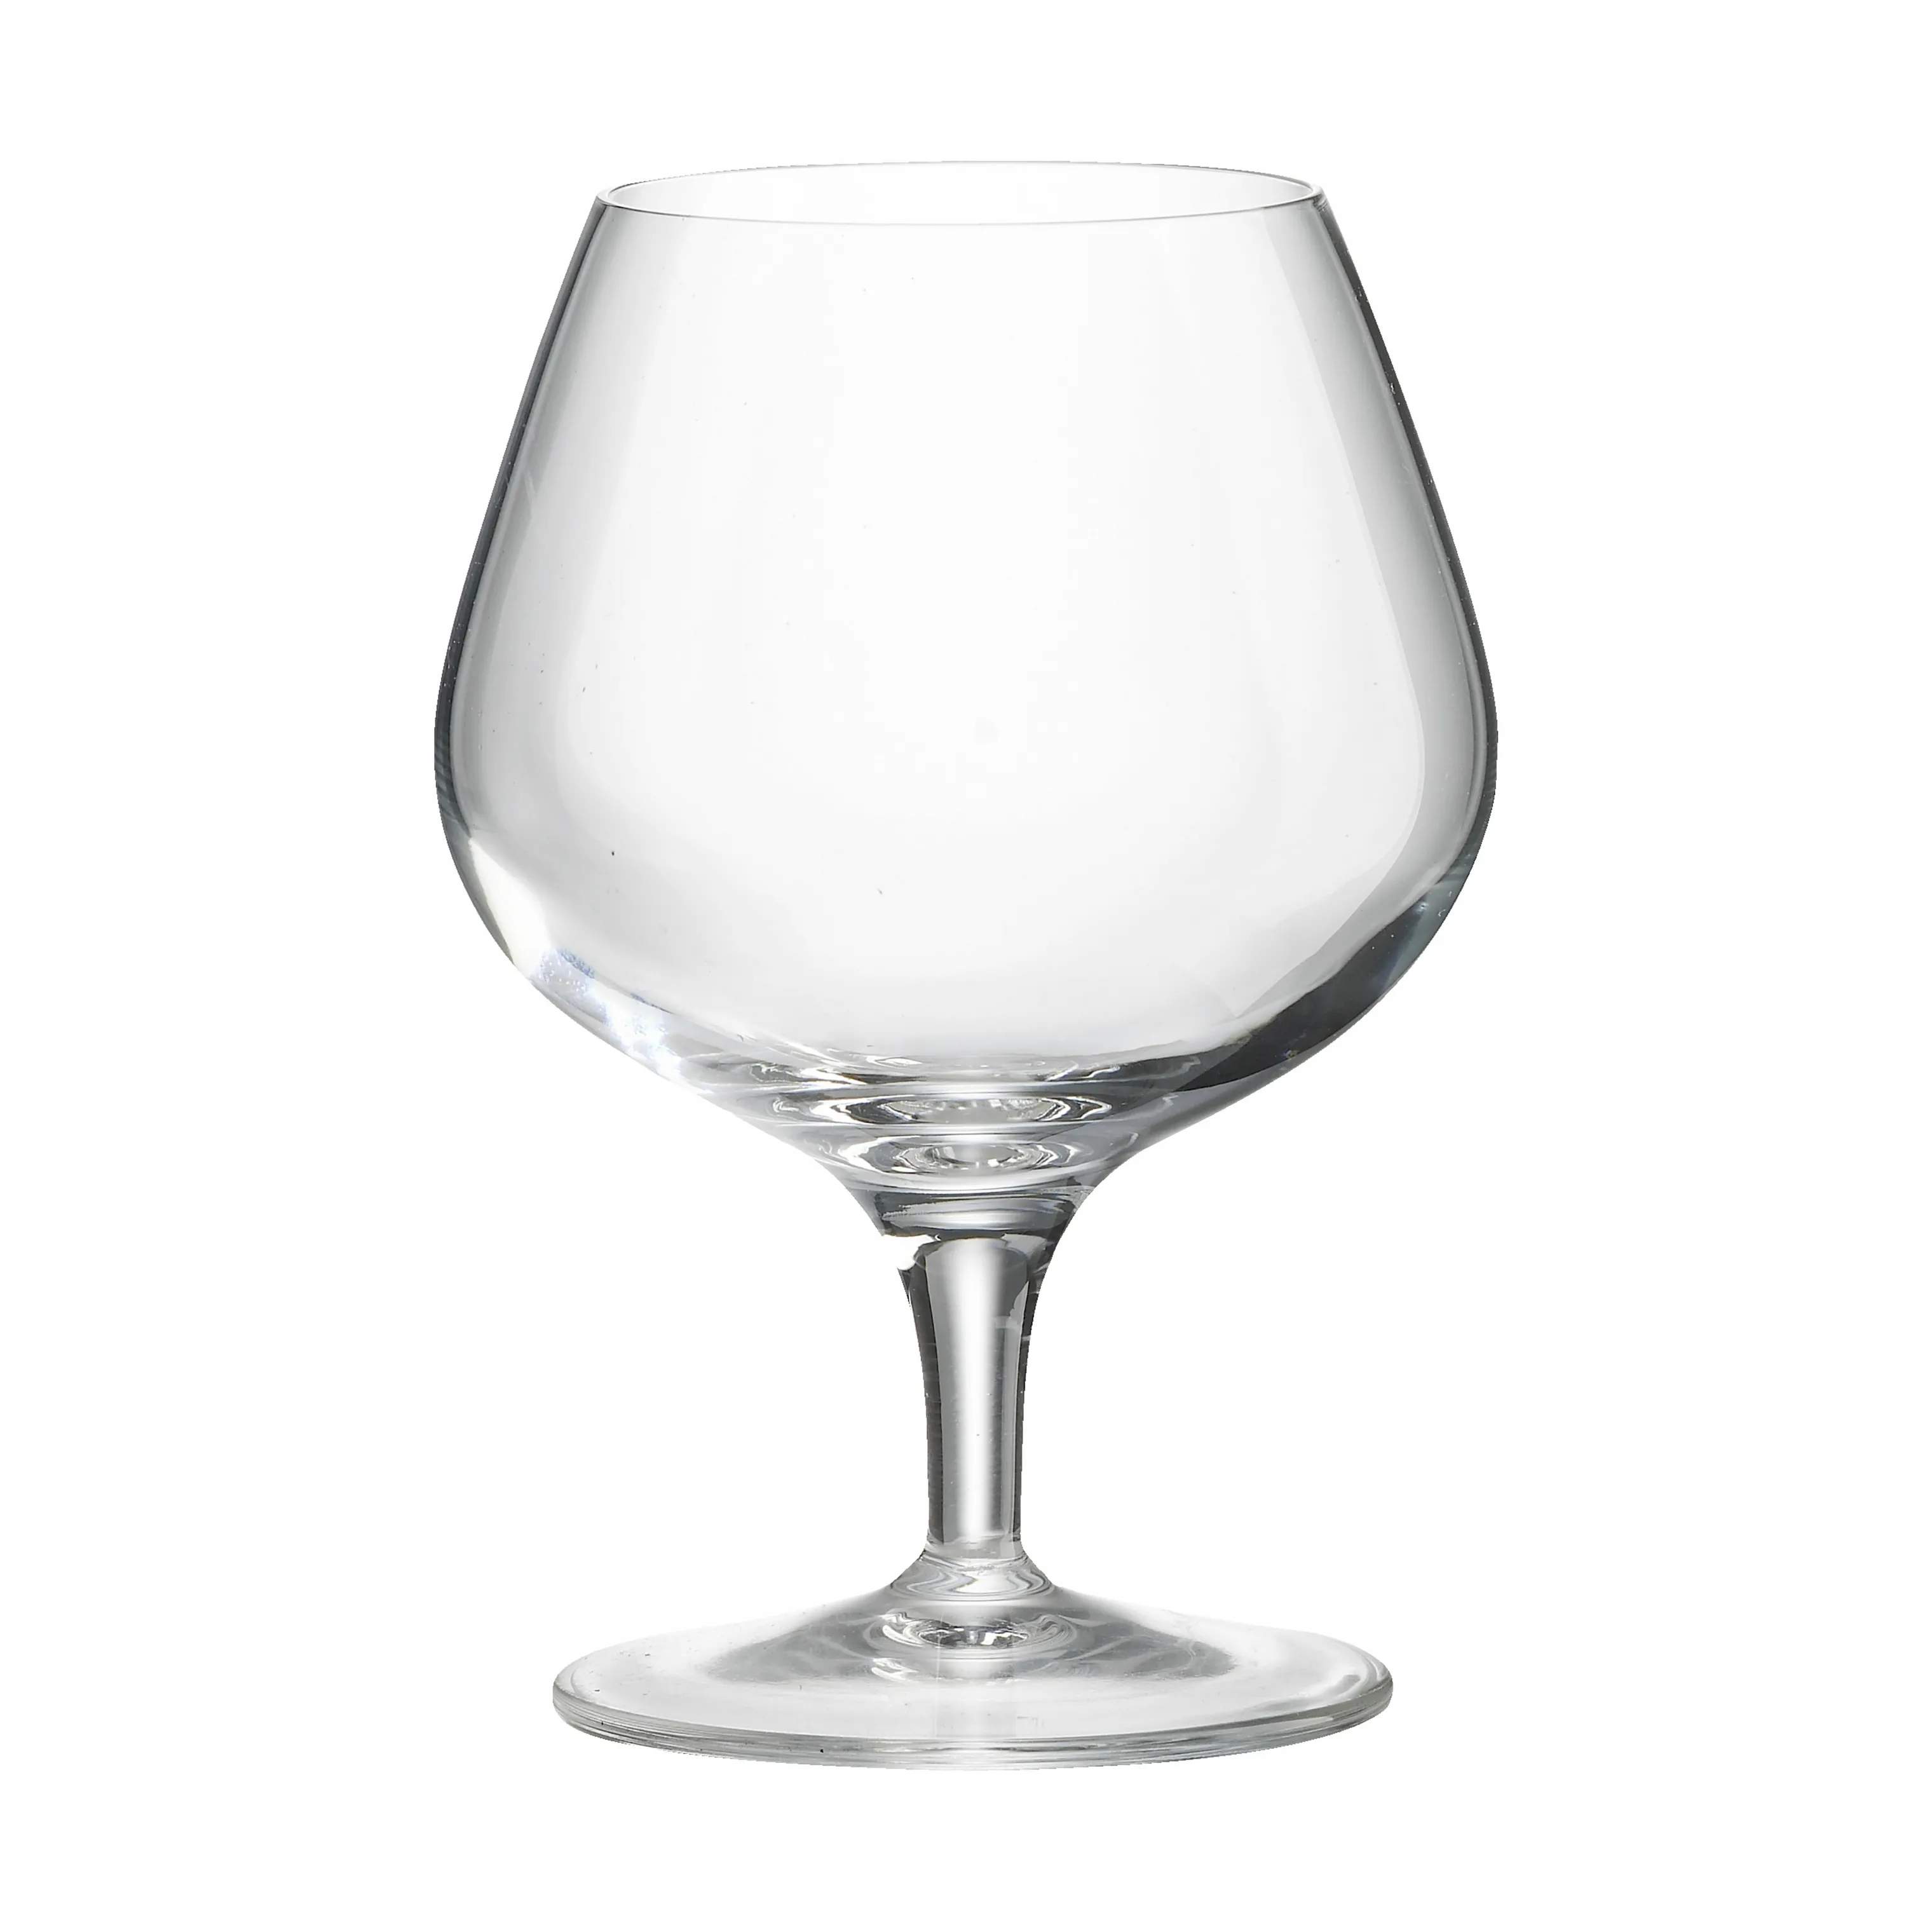 Napoleon Gognacglas, klar, large